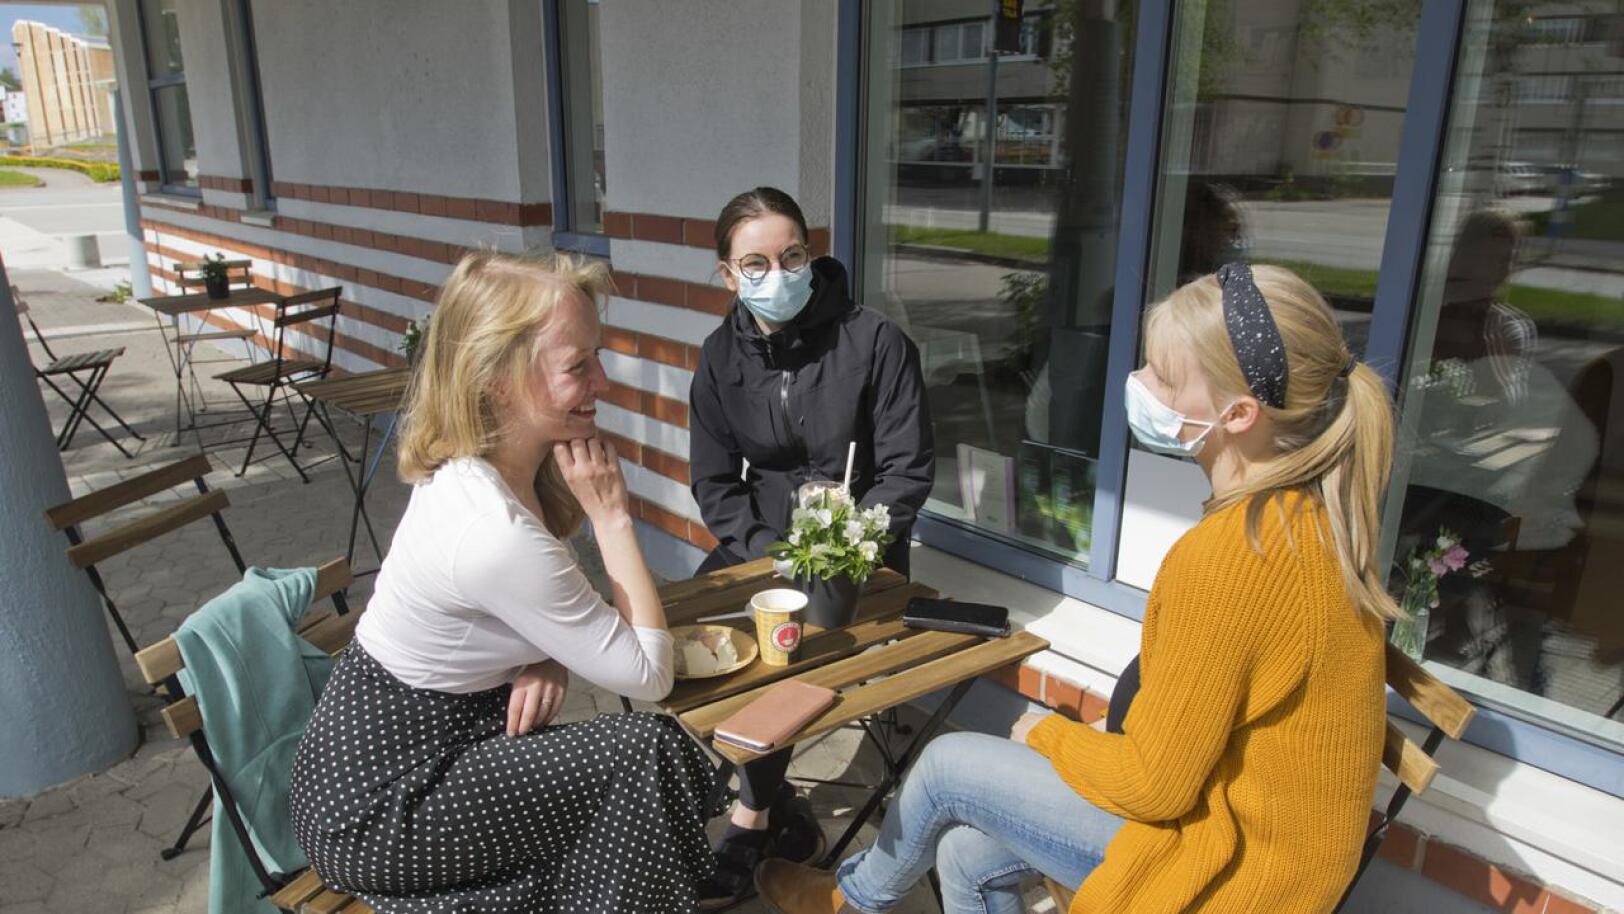 Oikealla: Katariina Ylikotila, Helmi Peltokorpi ja Olga Aitto-oja halusivat tulla kokeilemaan ystävänsä Milla Kiviojan uuden yrityksen tuotteita.